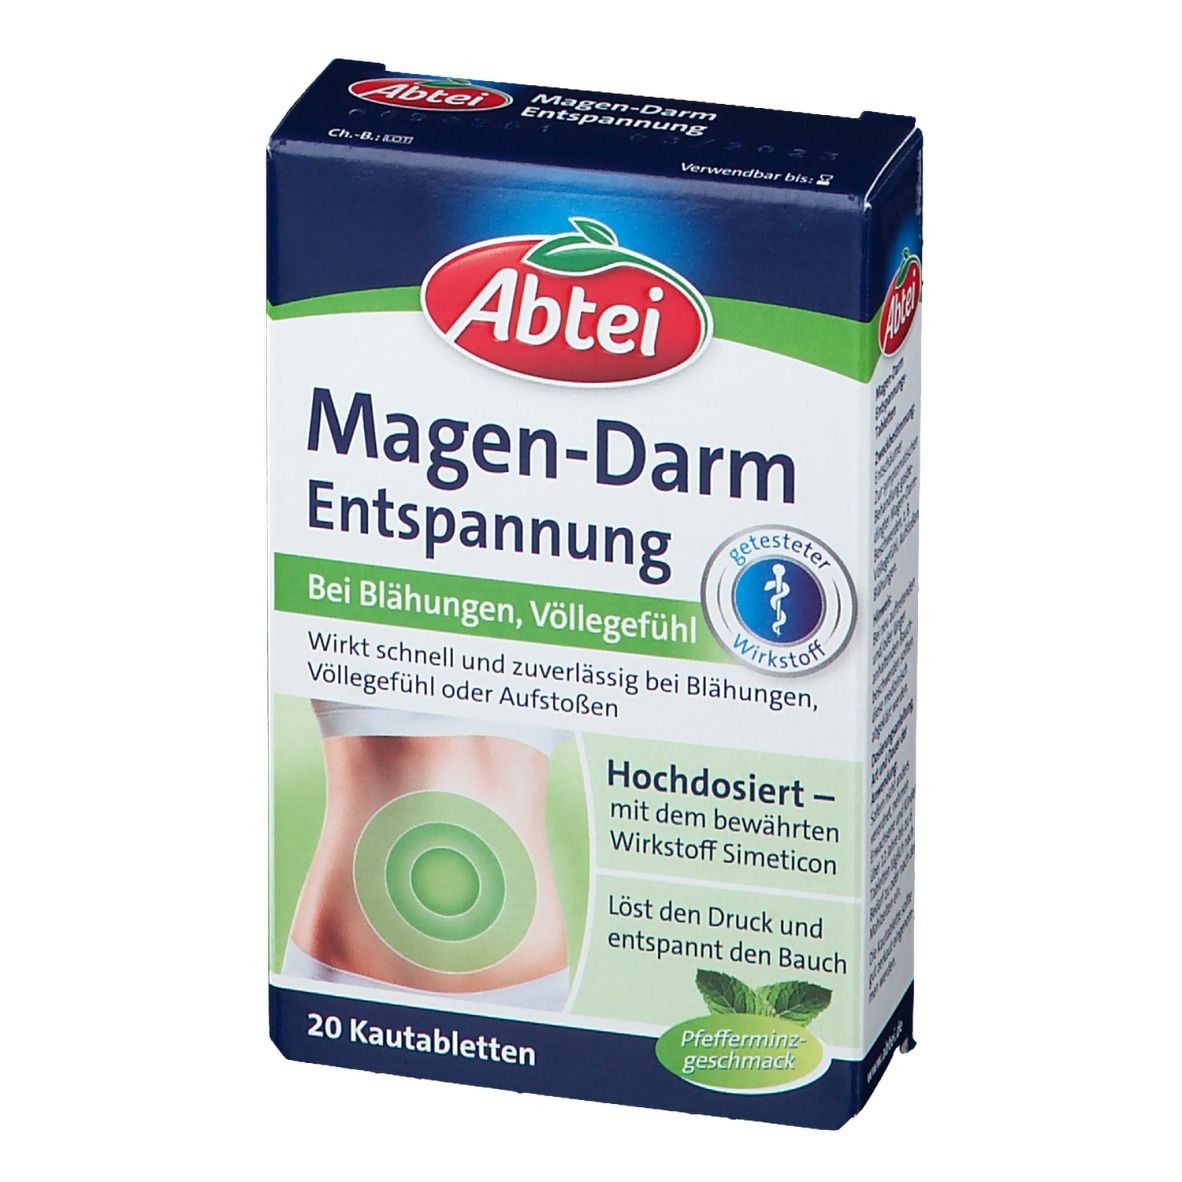 Abtei Magen-Darm Entspannungs-Tabletten